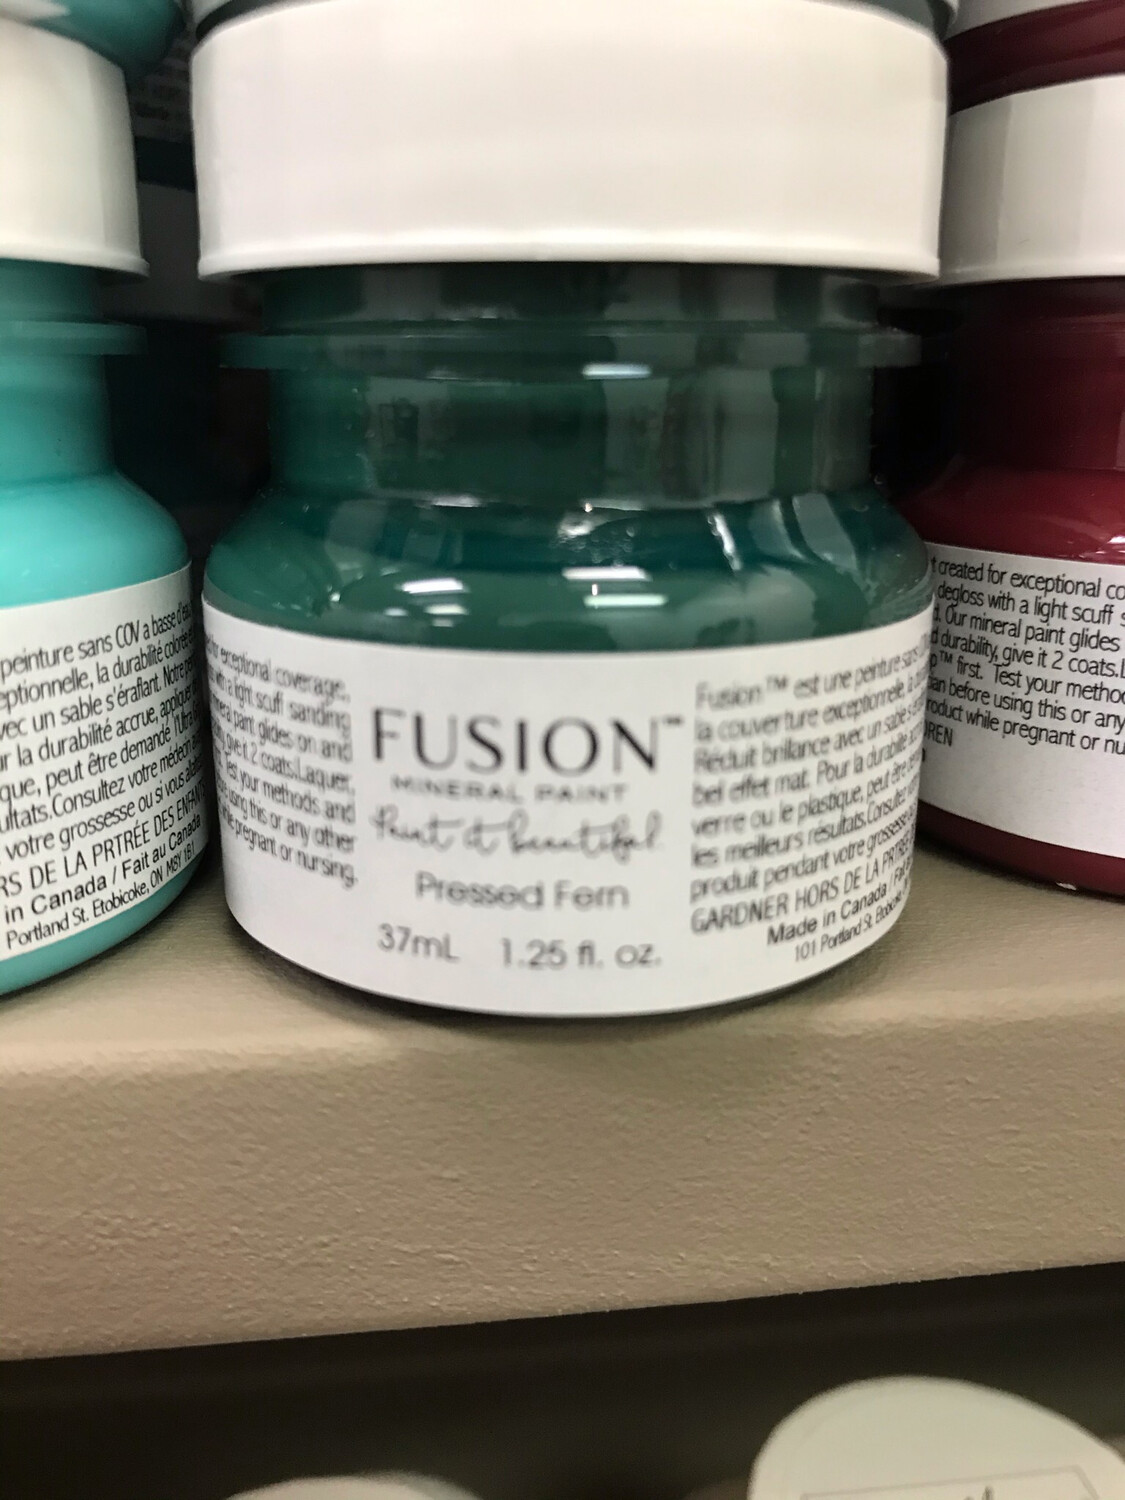 Fusion Pressed Fern 37ml